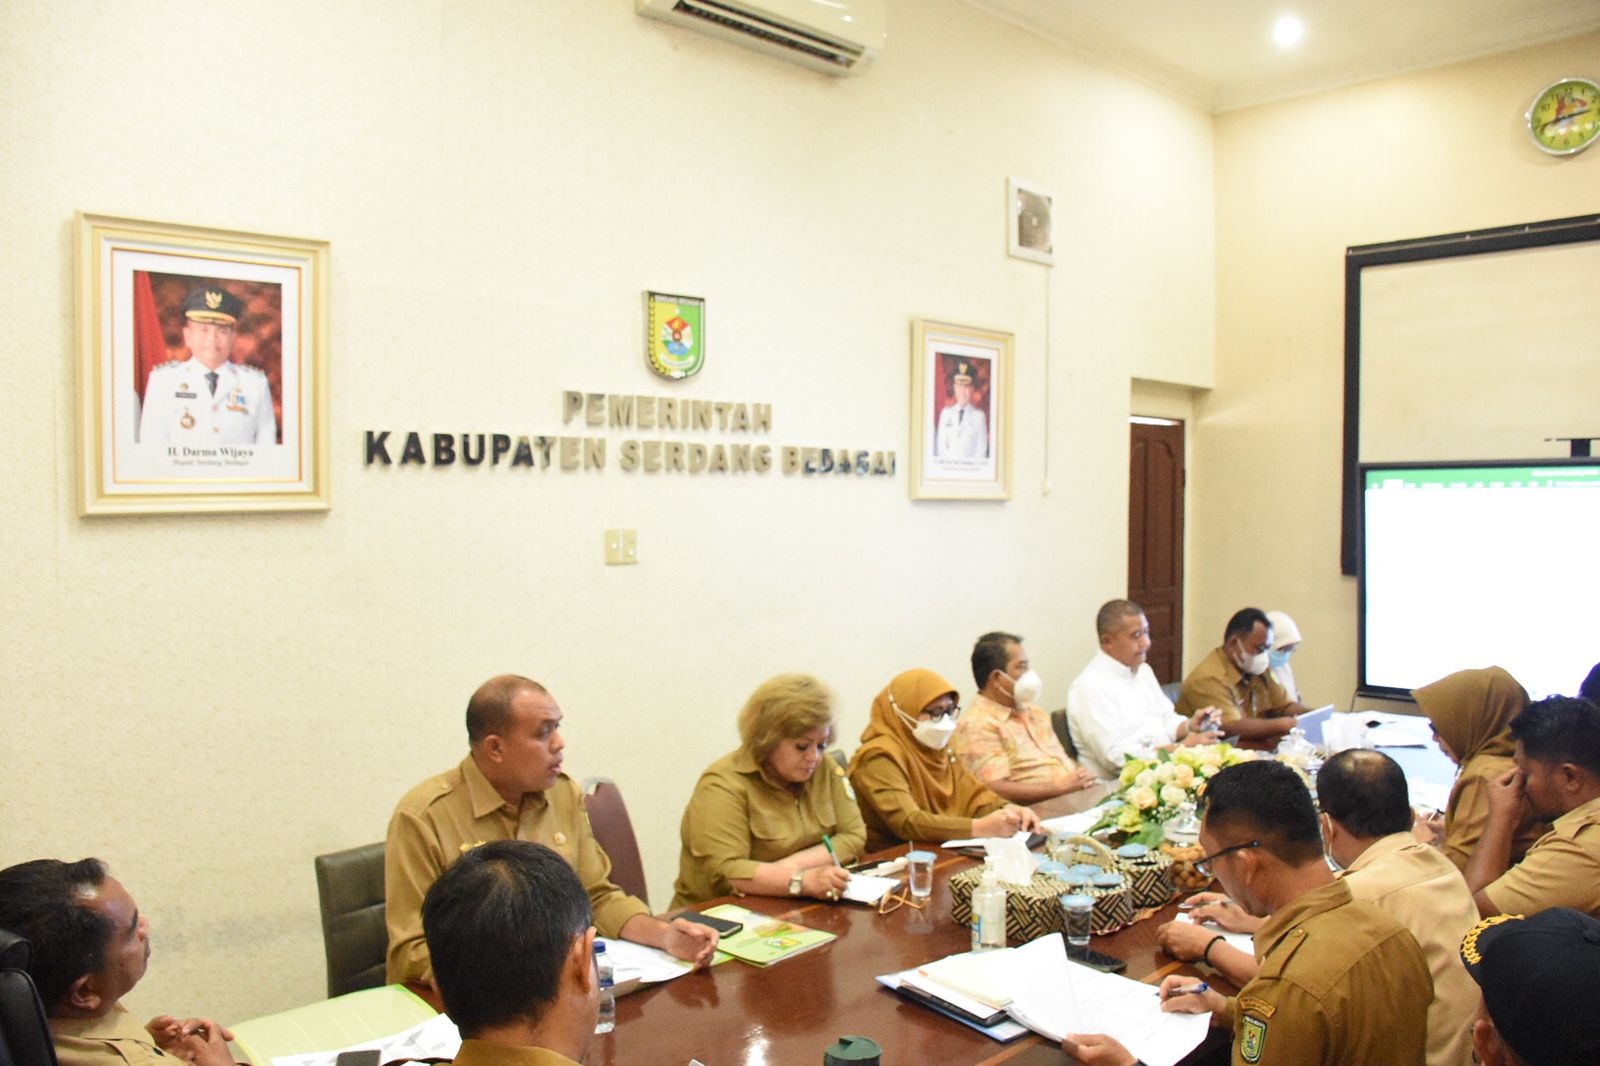 RKPD Kabupaten Sergai Fokuskan Pembangunan Infrastruktur Jalan